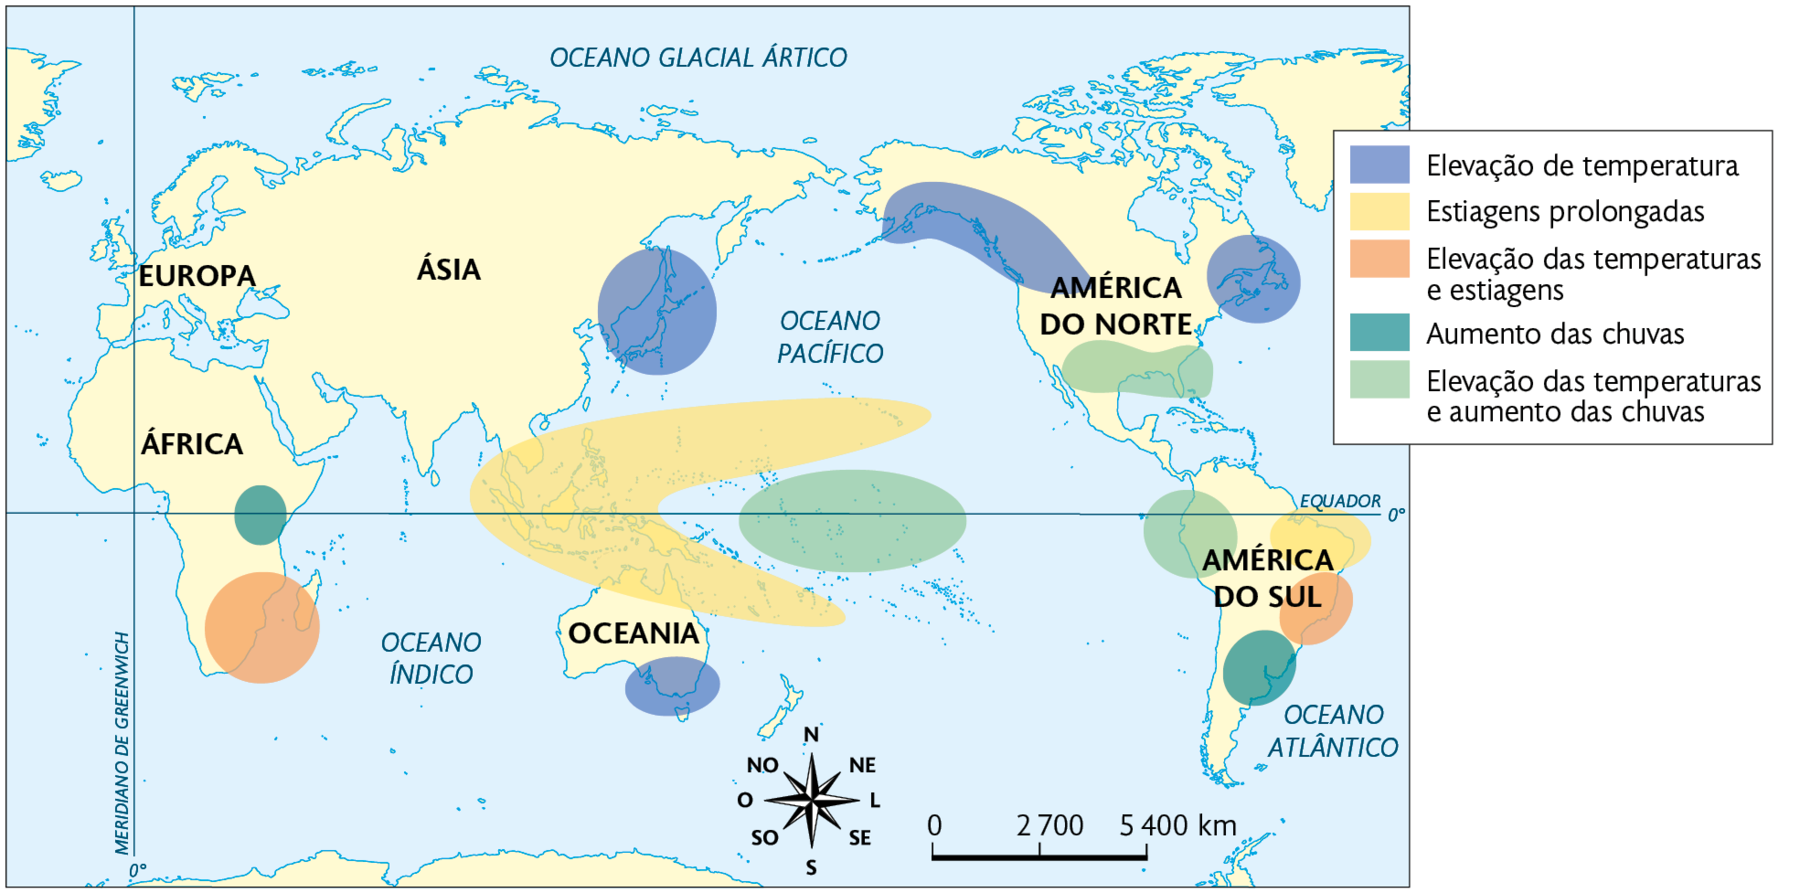 Mapa. Efeitos do El Niño no mundo (dezembro, janeiro e fevereiro). Elevação de temperatura: leste da Ásia, sudeste da Oceania, noroeste e leste da América do Norte. Estiagens prolongadas: área no Oceano Pacífico, sobre as ilhas da Ásia, norte da Oceania e nordeste da América do Sul. Elevação das temperaturas e estiagens: sudeste da África e leste da América do Sul. Aumento das chuvas: leste da África e sudeste da América do Sul. Elevação das temperaturas e aumento das chuvas: grande área no sul do Oceano Pacífico, sul da América do Norte, noroeste da América do Sul. Na parte inferior, rosa dos ventos e a escala: 2700 quilômetros por centímetro.